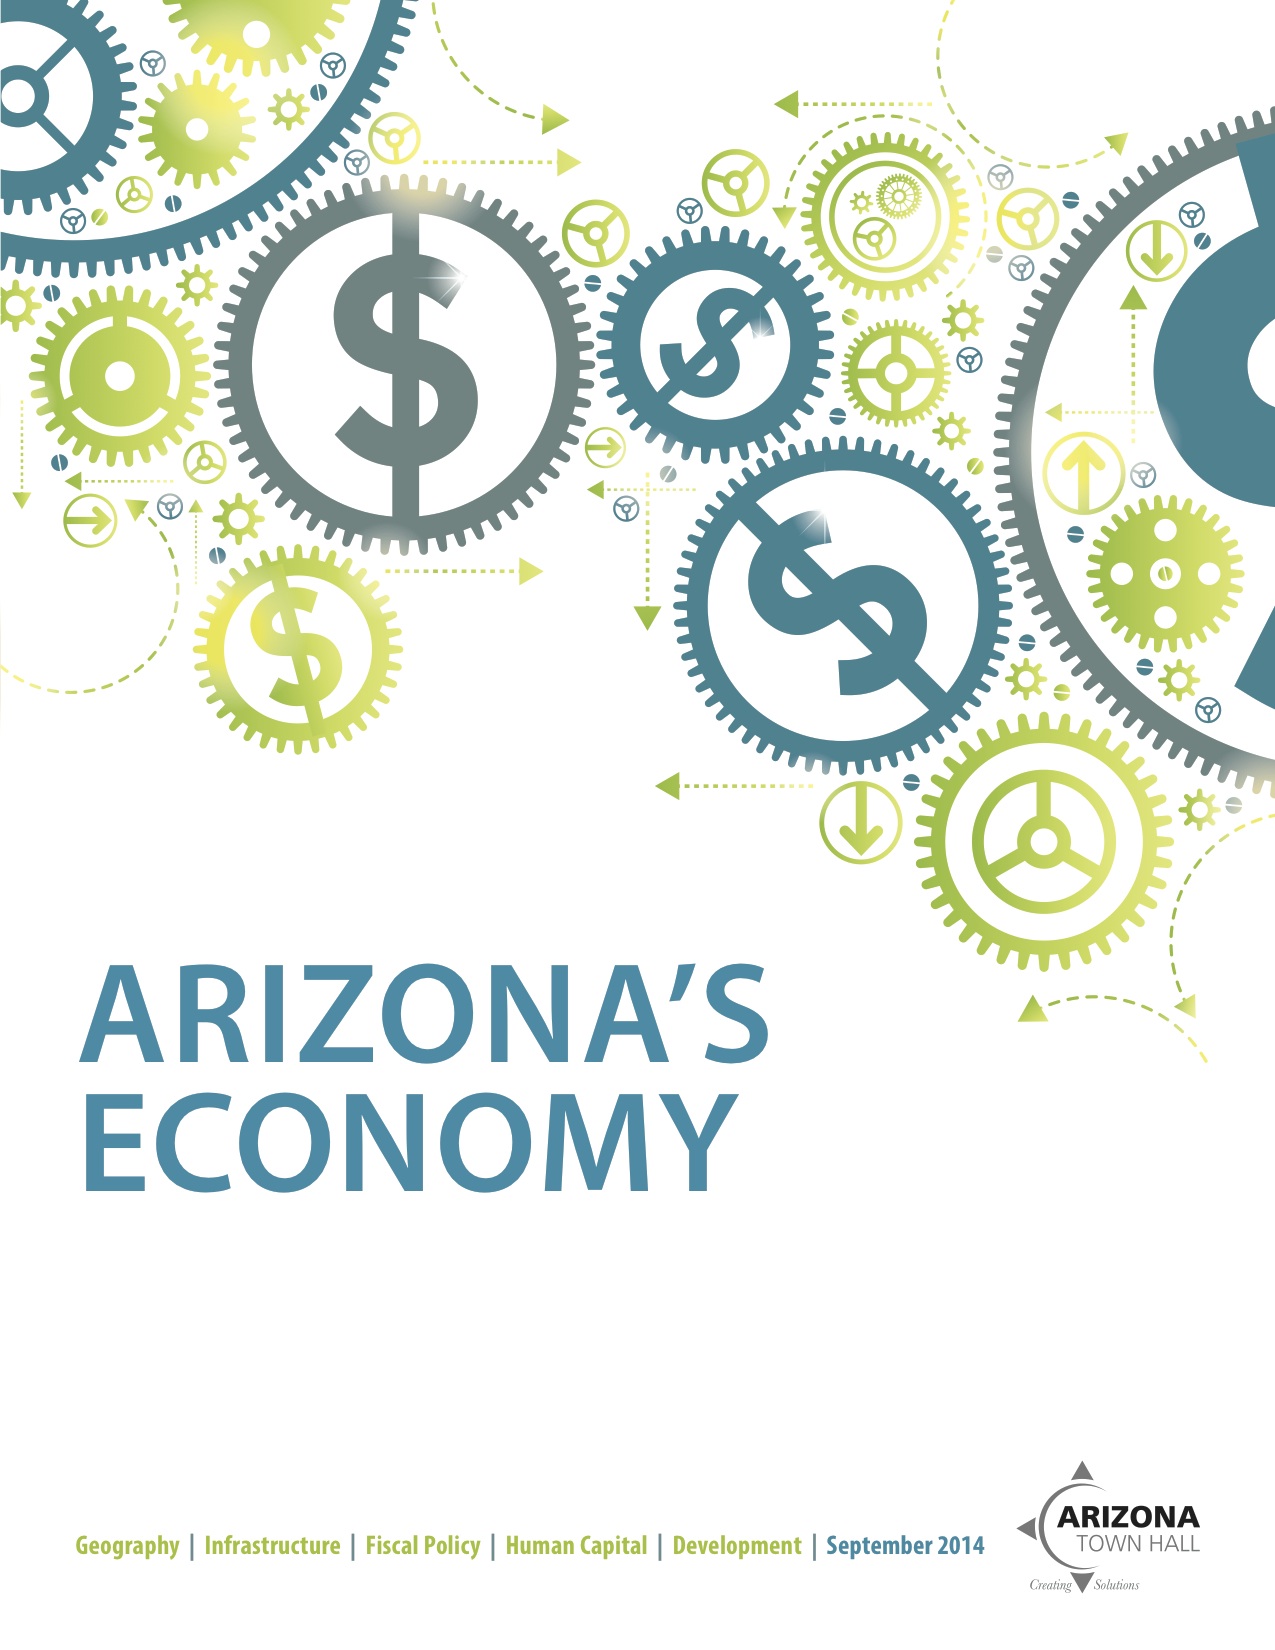 Arizona's Economy